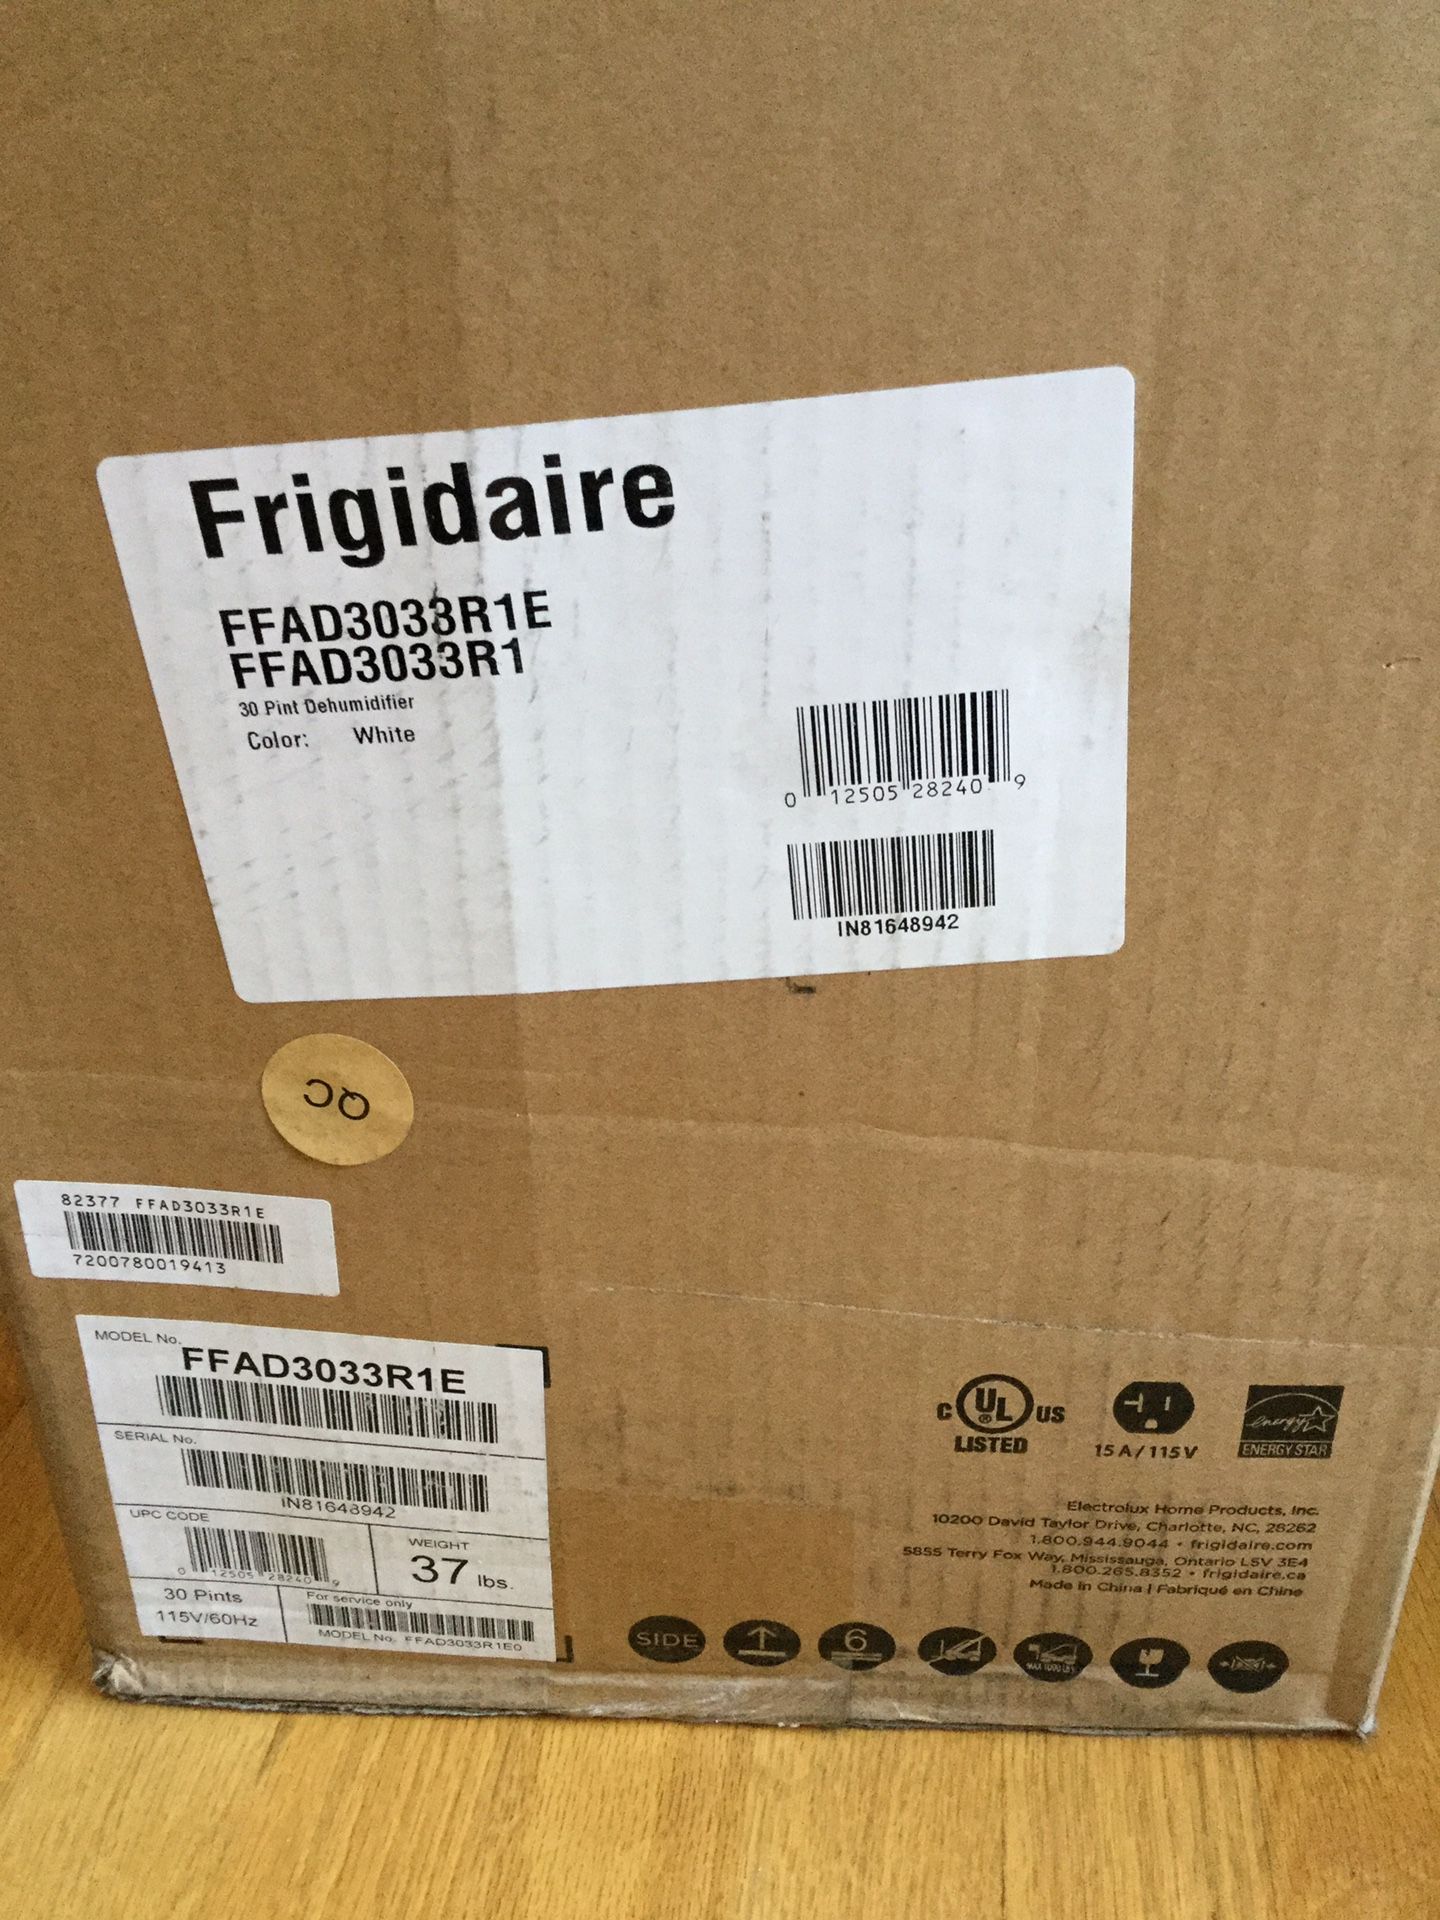 Frigidaire Dehumidifier model #FFAD3033R1